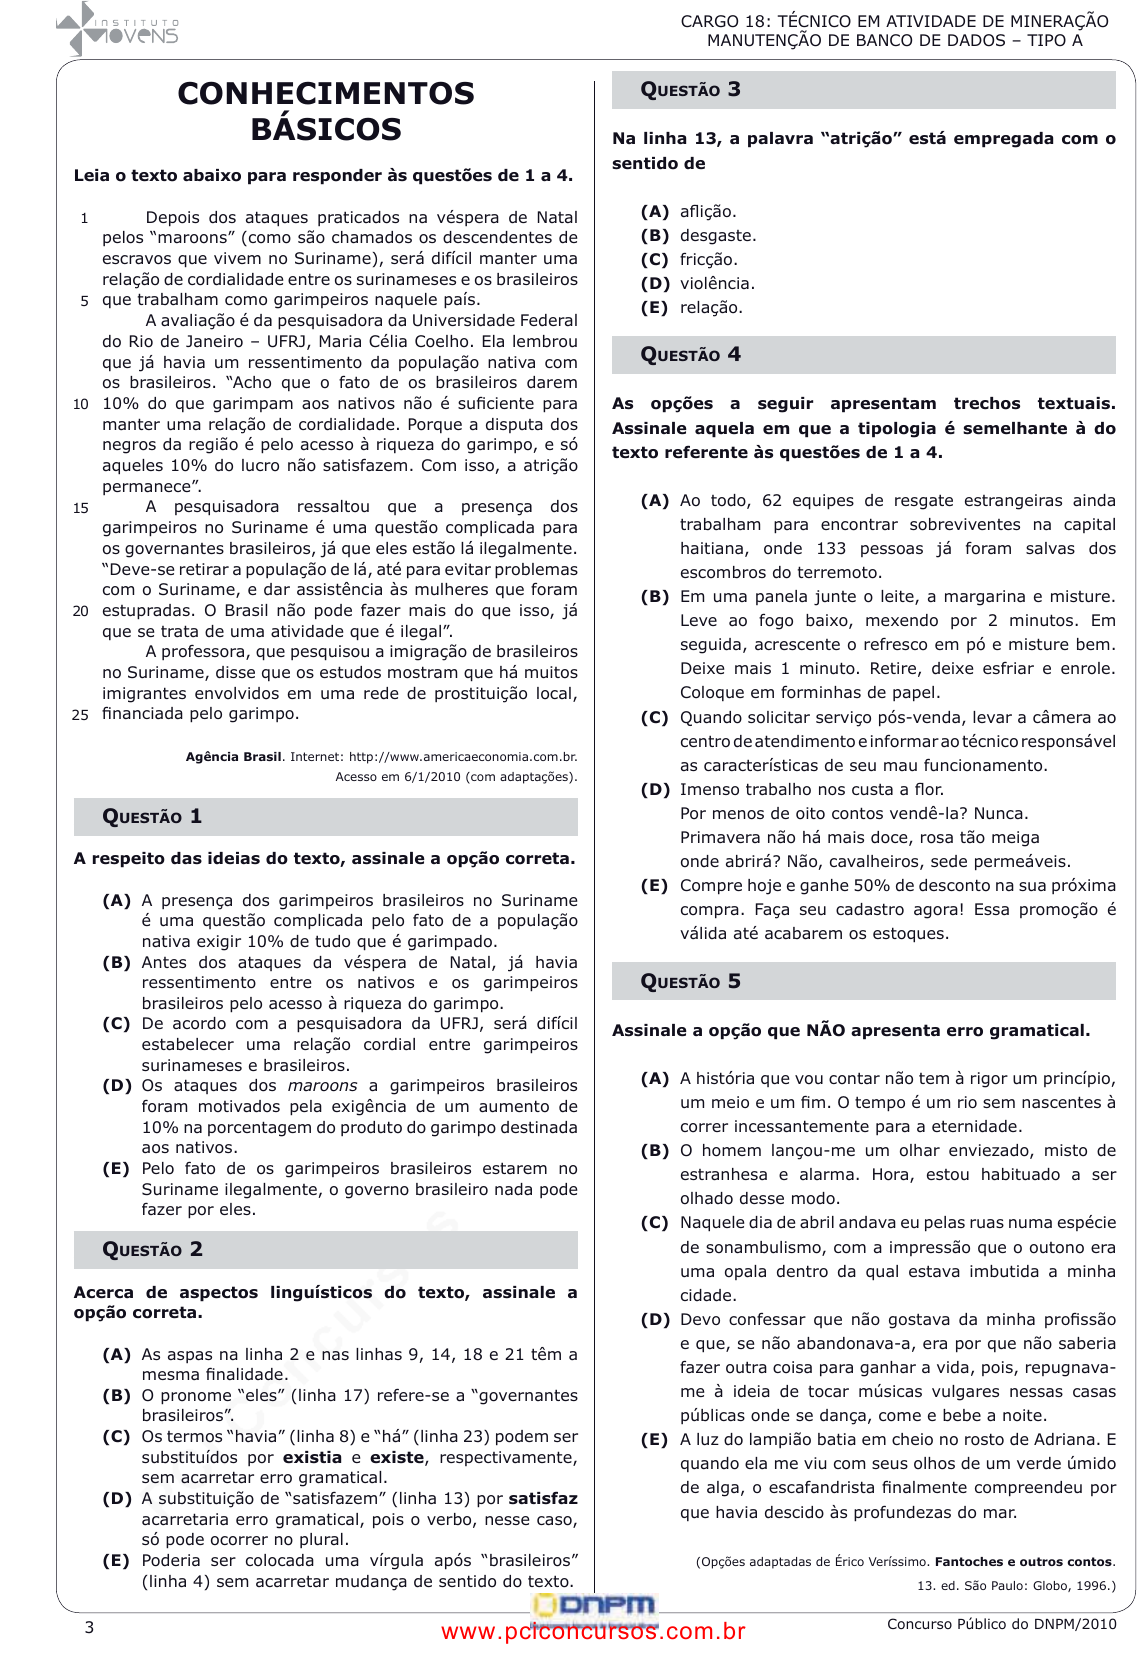 Prova UFRJ - UFRJ - 2010 - para Técnico em Contabilidade.pdf - Provas de  Concursos Públicos